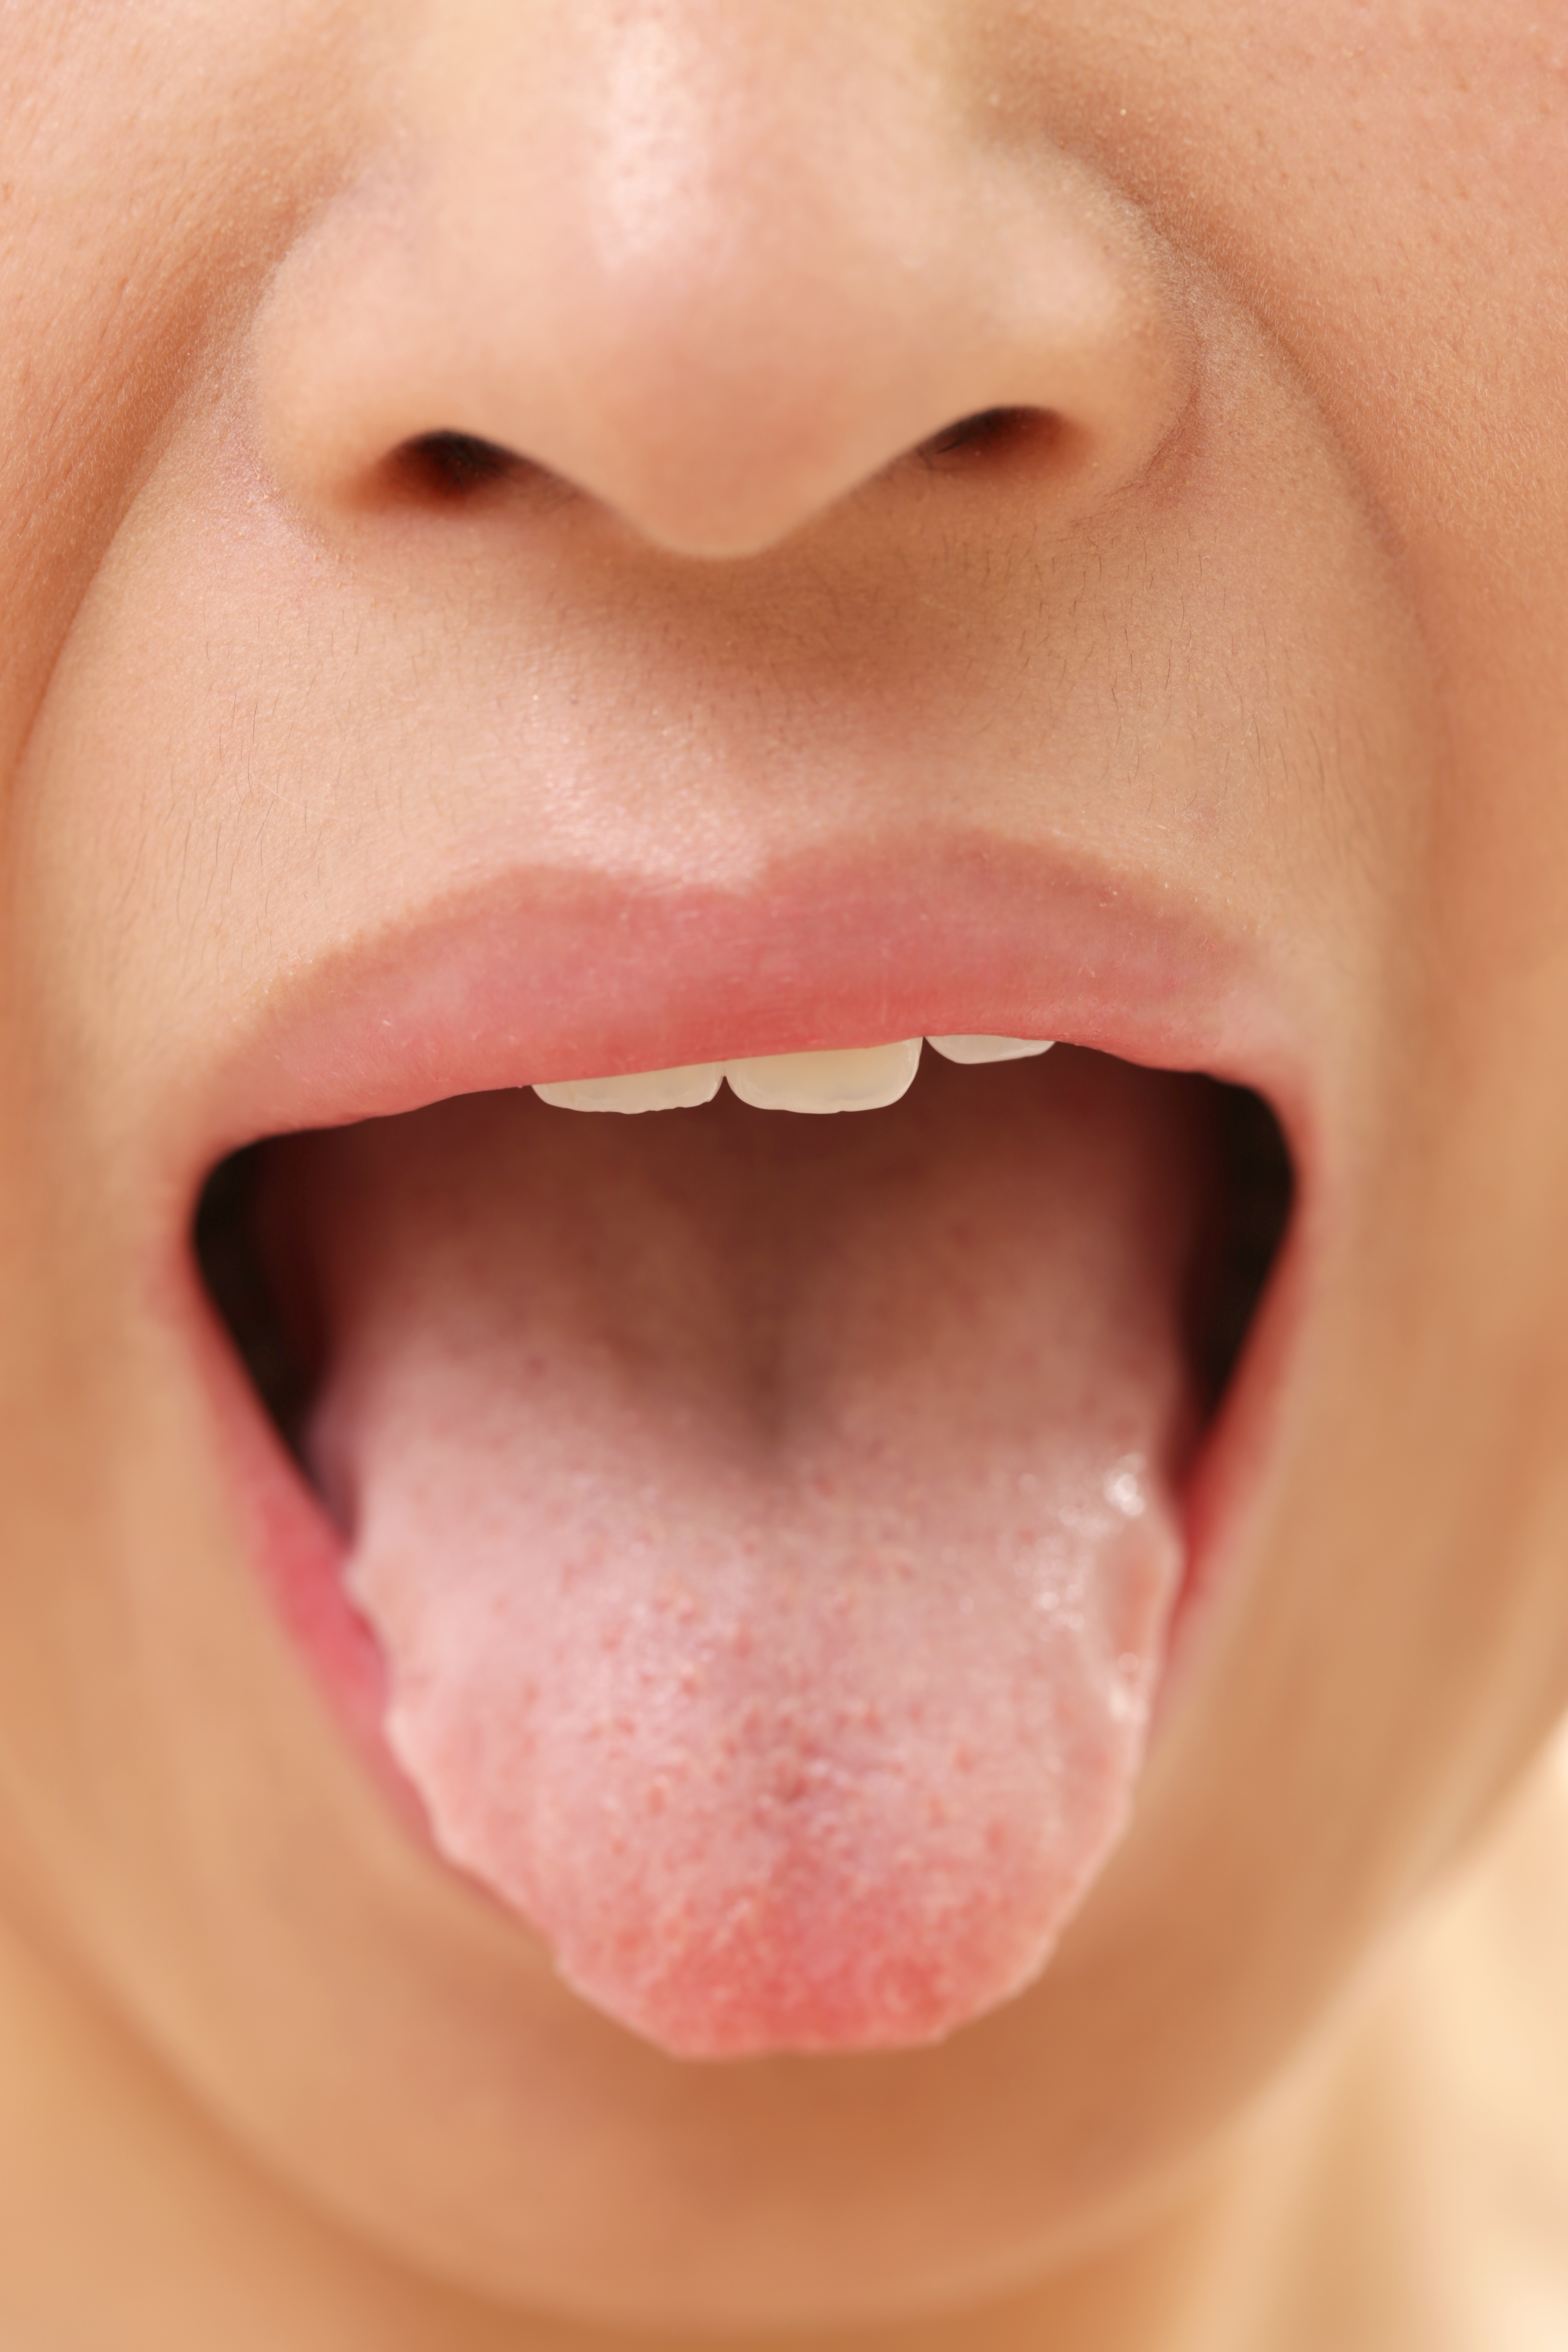 10 видов глоссита языка с фото, которые заставят насторожиться каждого